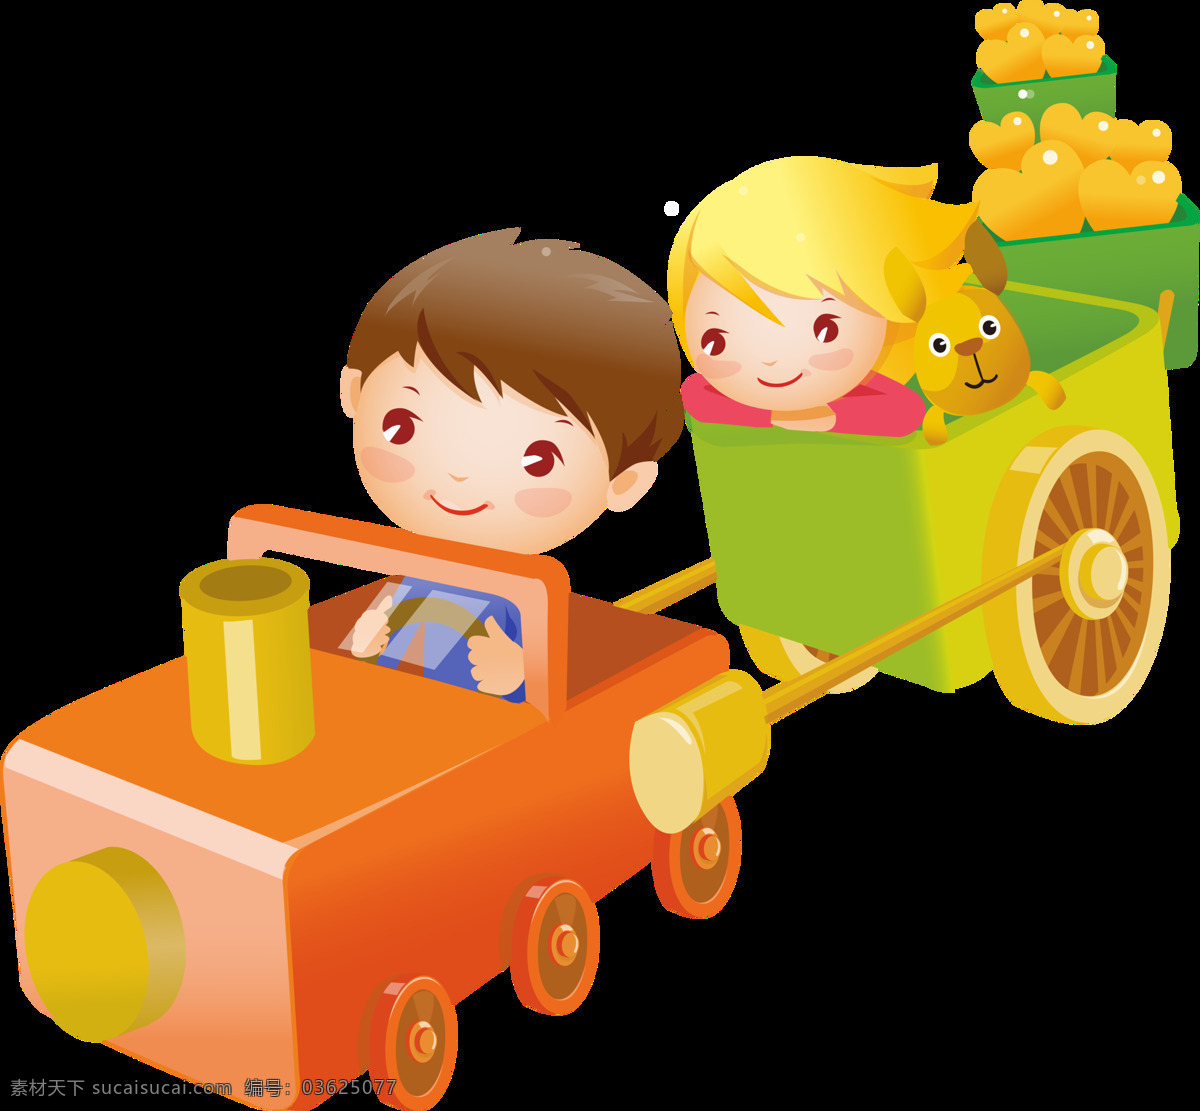 游乐场 小 火车 元素 白云 儿童火车 火车道具 火车设计 火车图片 卡通火车 可可 玩具 玩具火车 玩耍 小火车素材 小火车玩具 烟筒